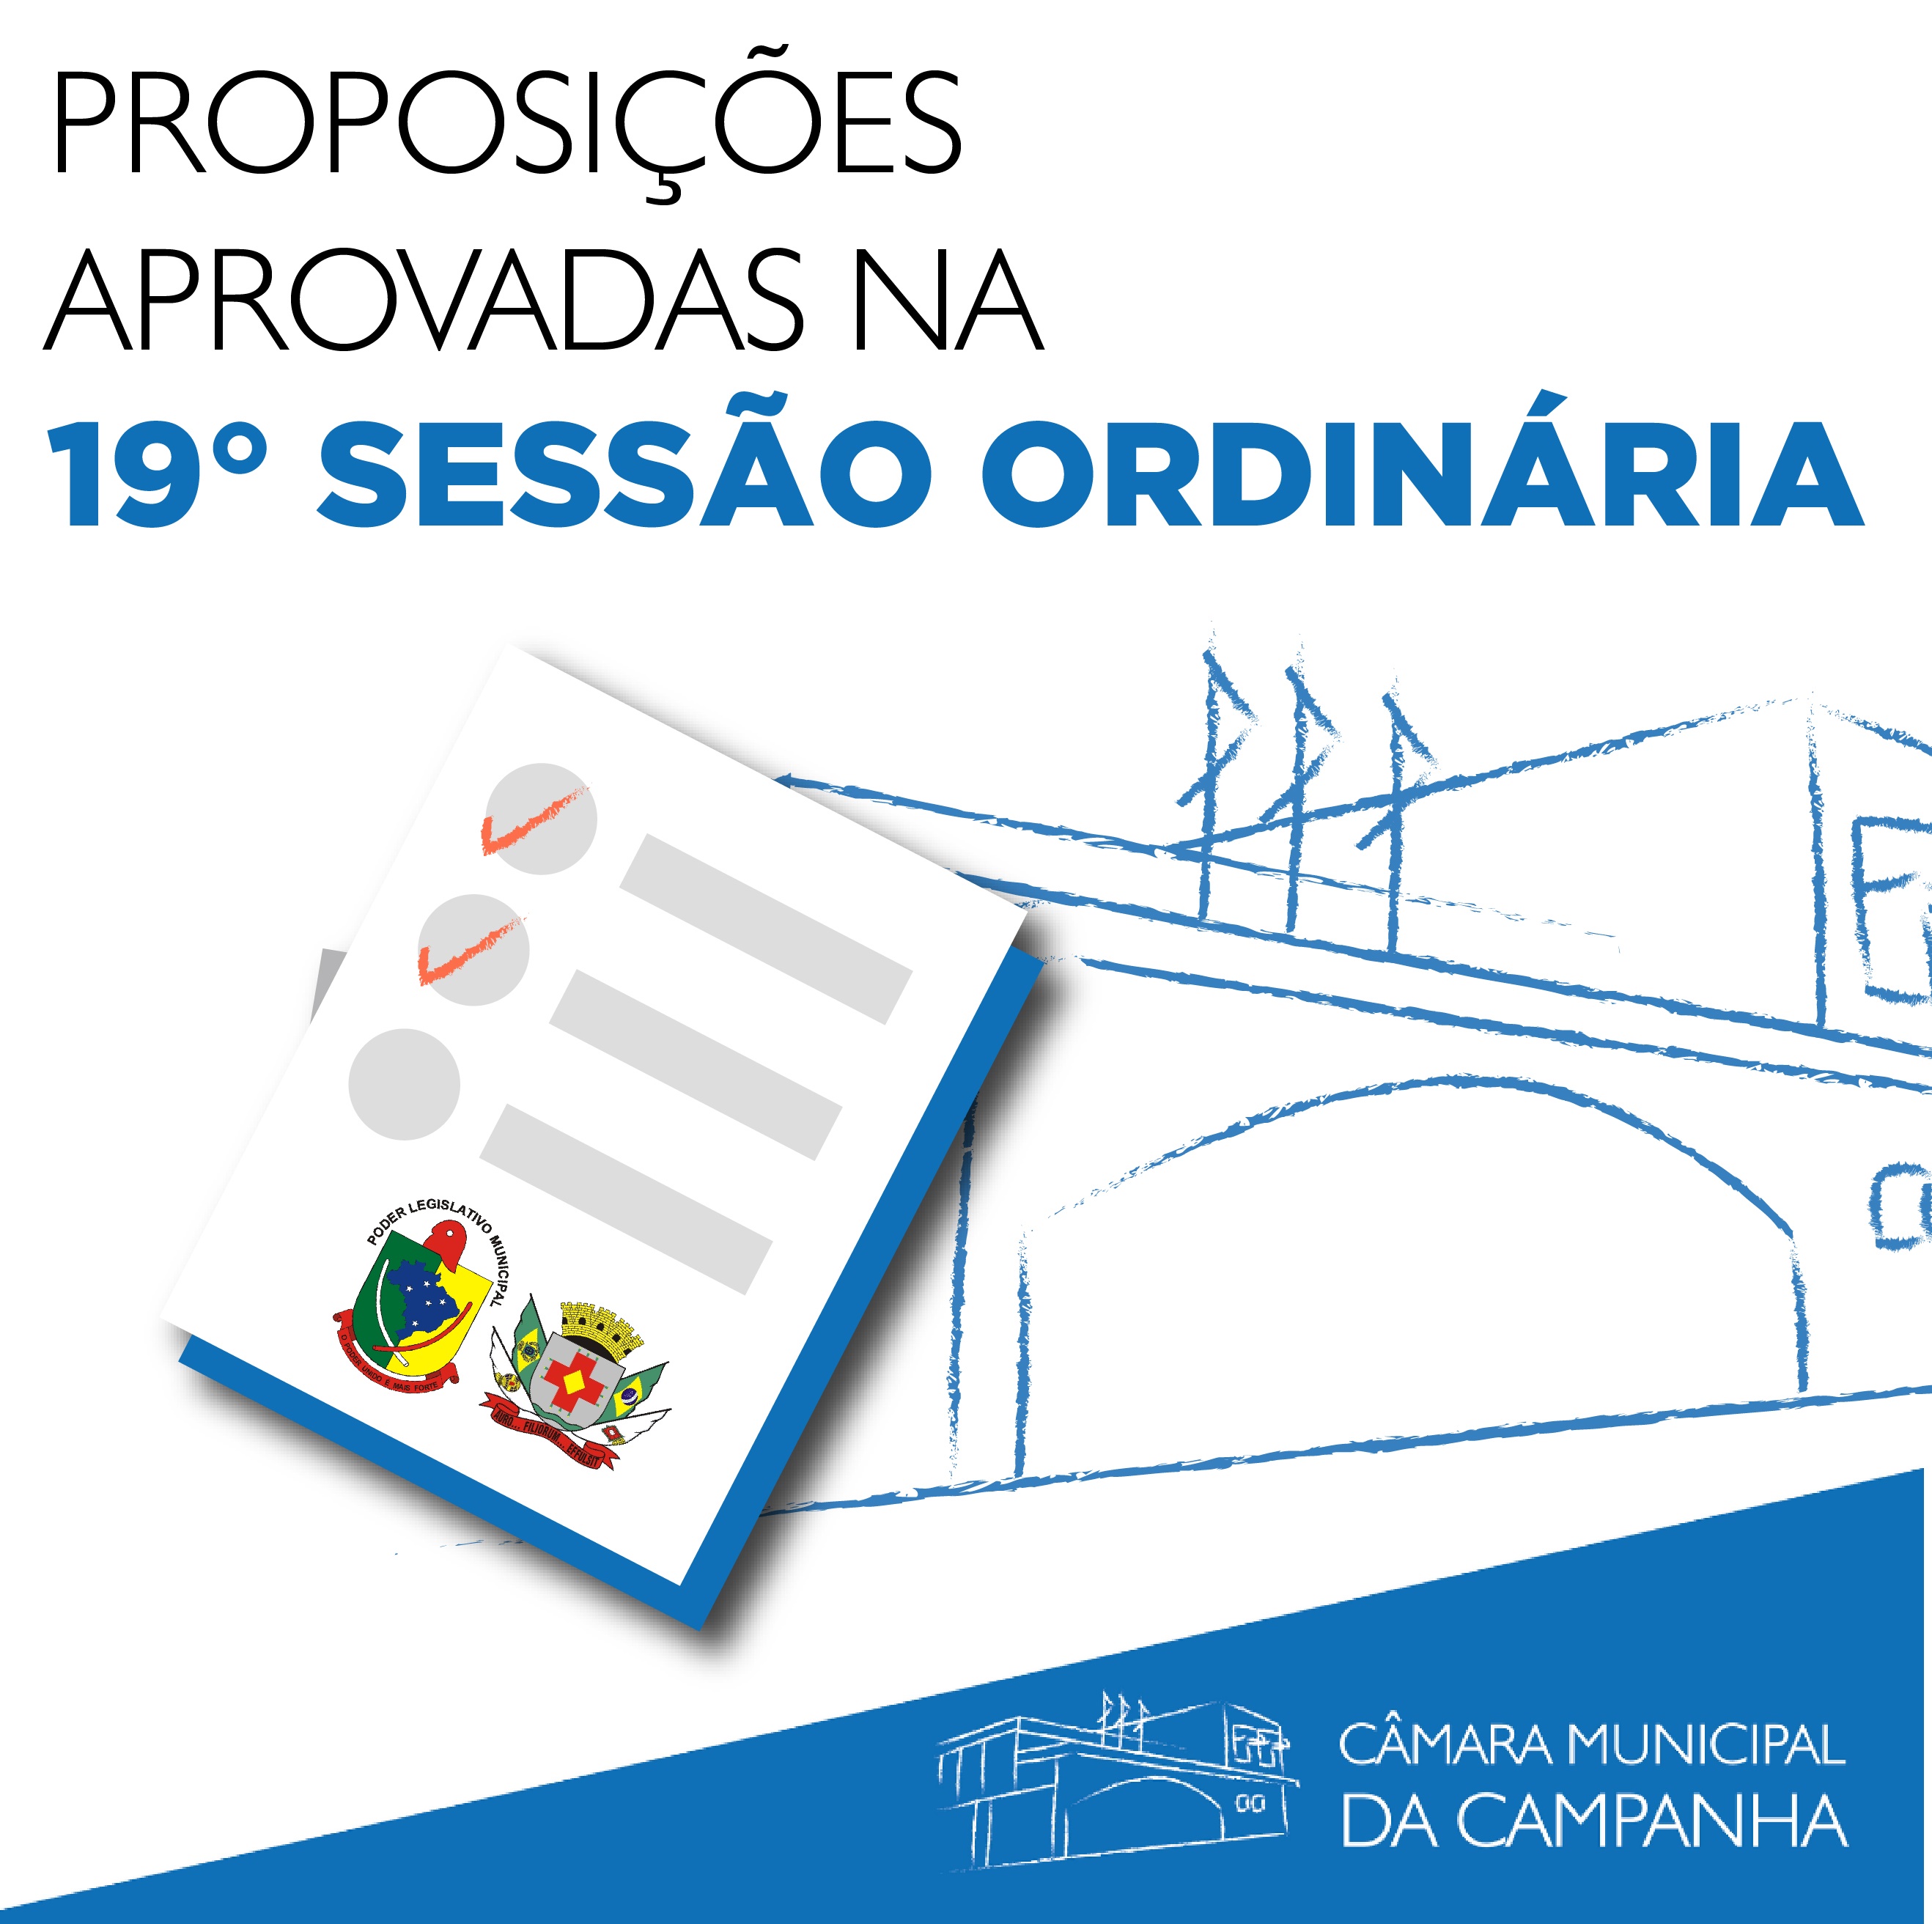 Confira as proposições aprovadas na 19° Sessão Ordinária de 2021, realizada no dia 8 de junho